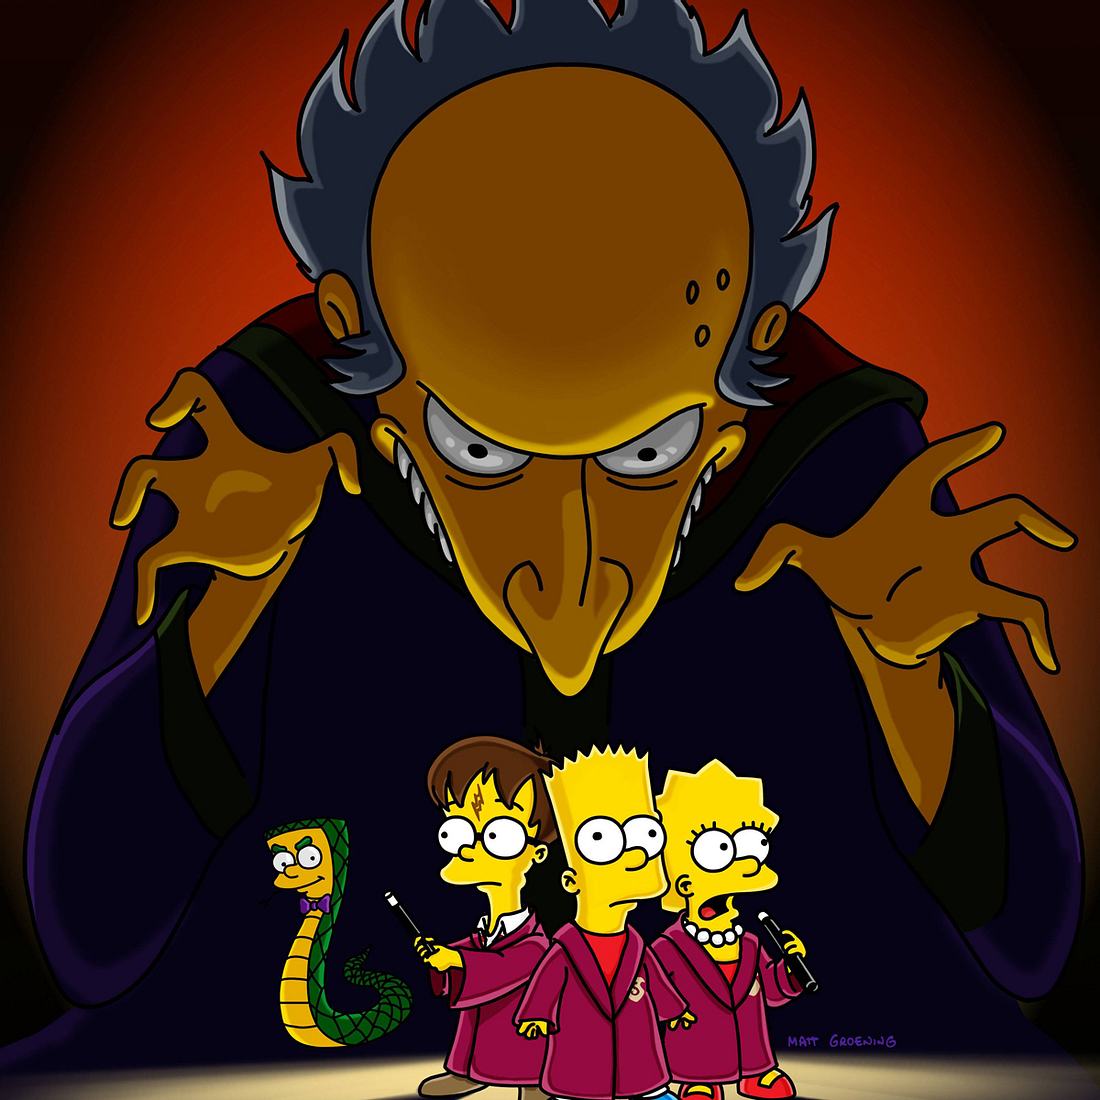 Böse Figuren, die jeder liebt: Mr. Burns, „The Simpsons“